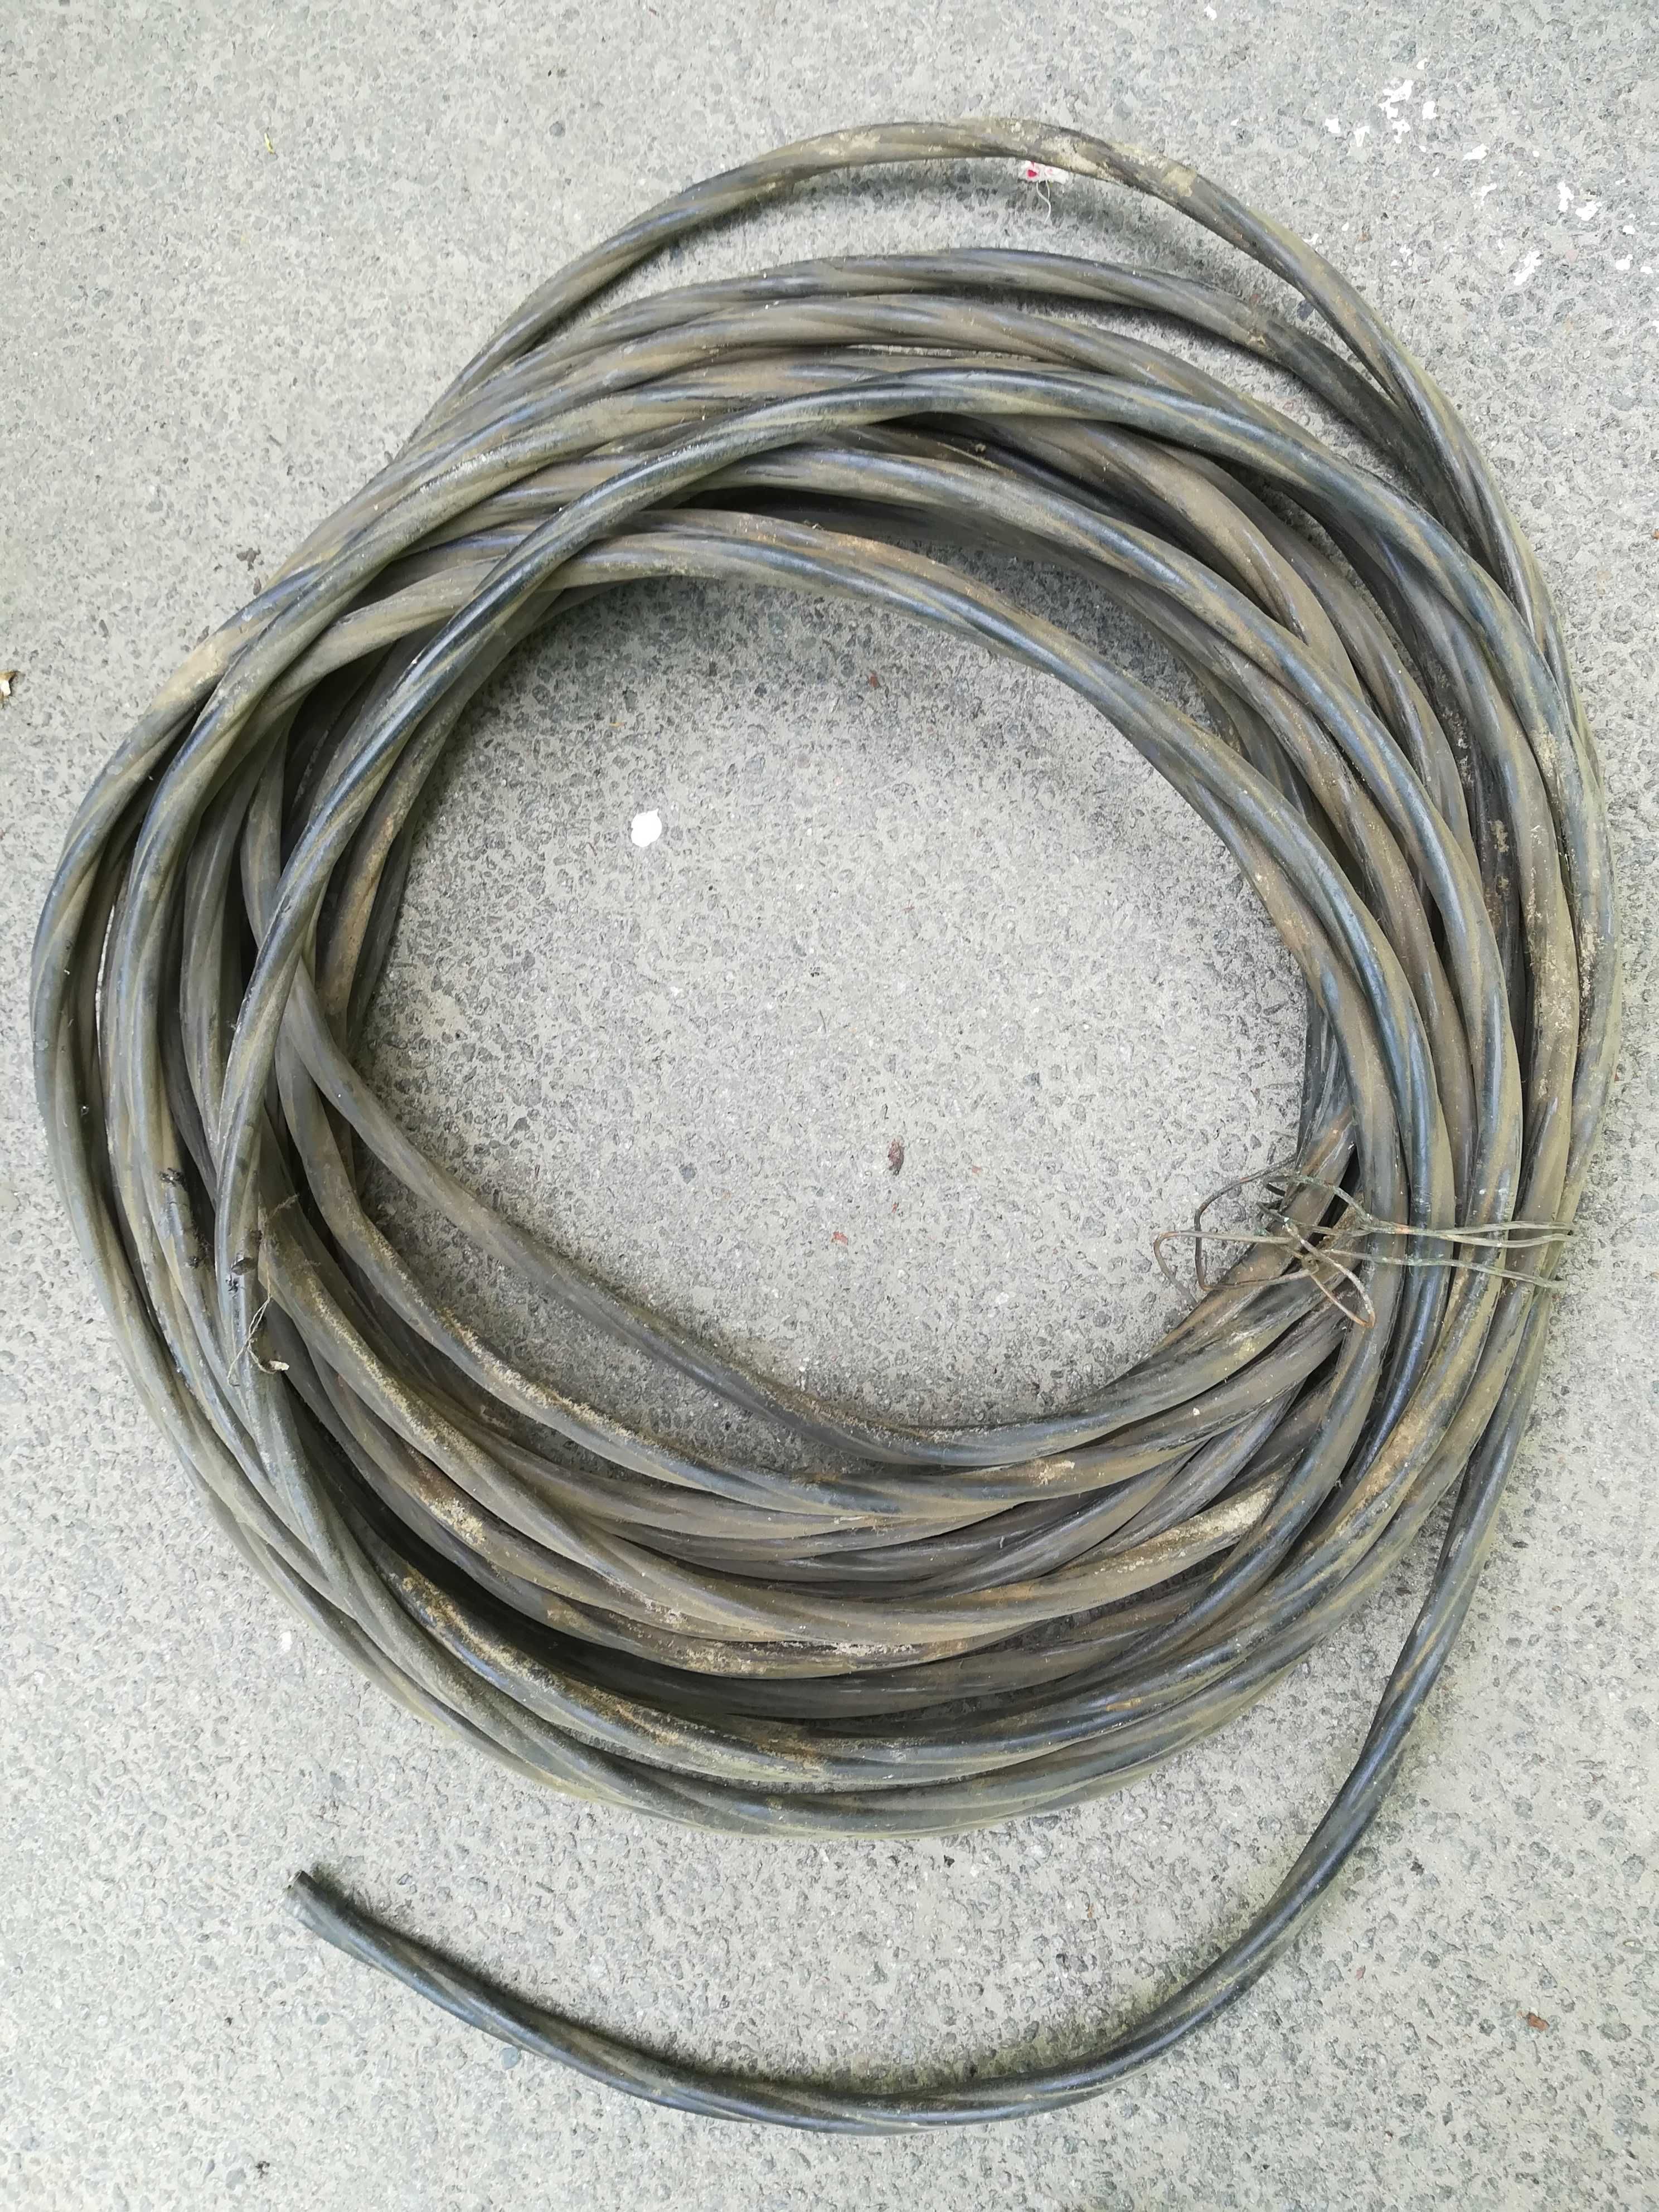 Продам кабель 3х жильный Аллюминиевый 12 метров